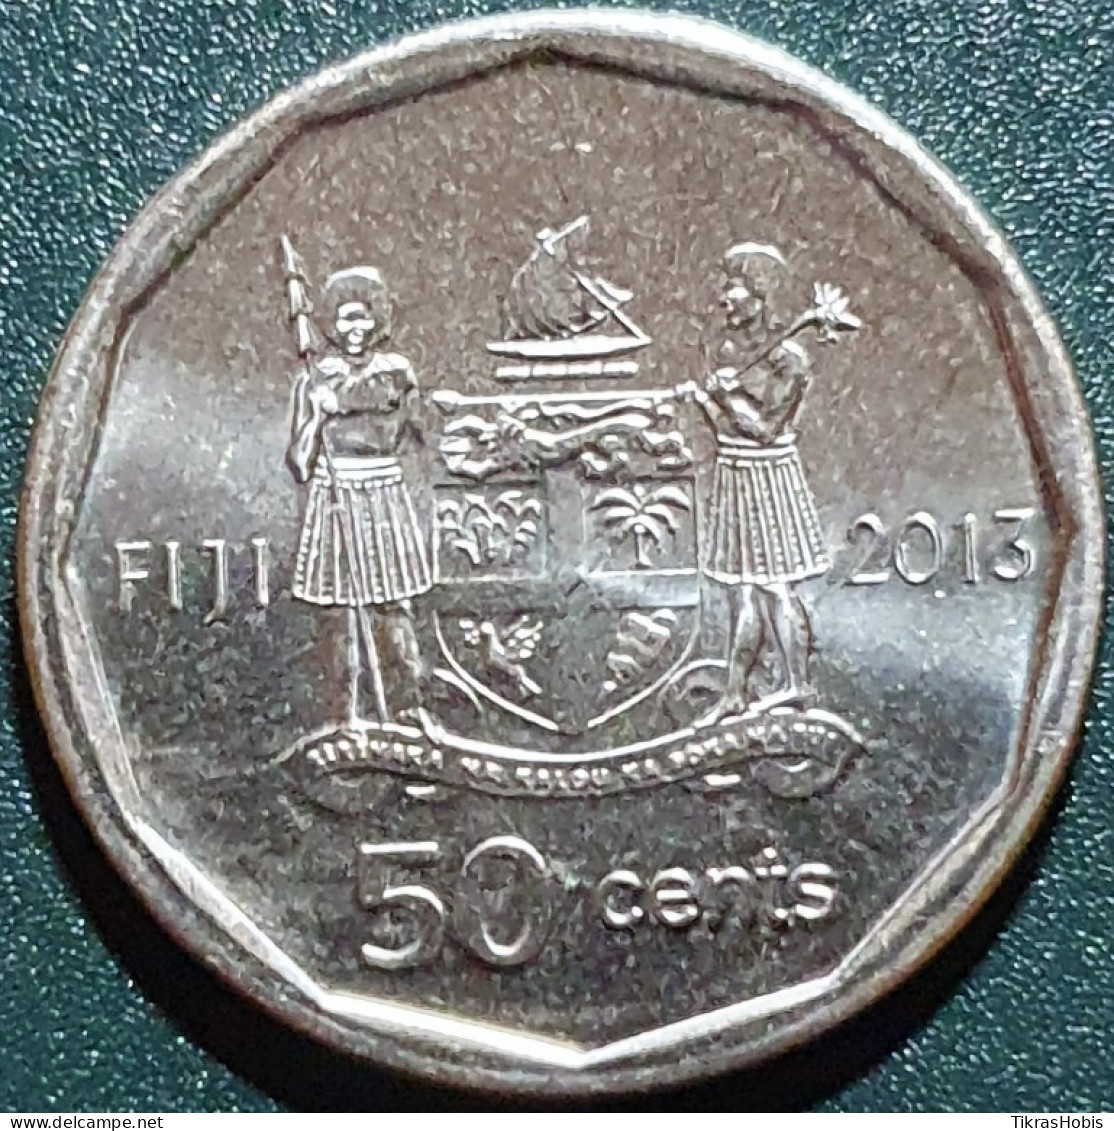 Fiji 50 Cents, 2013 Iliesa Delana KM515 - Fiji